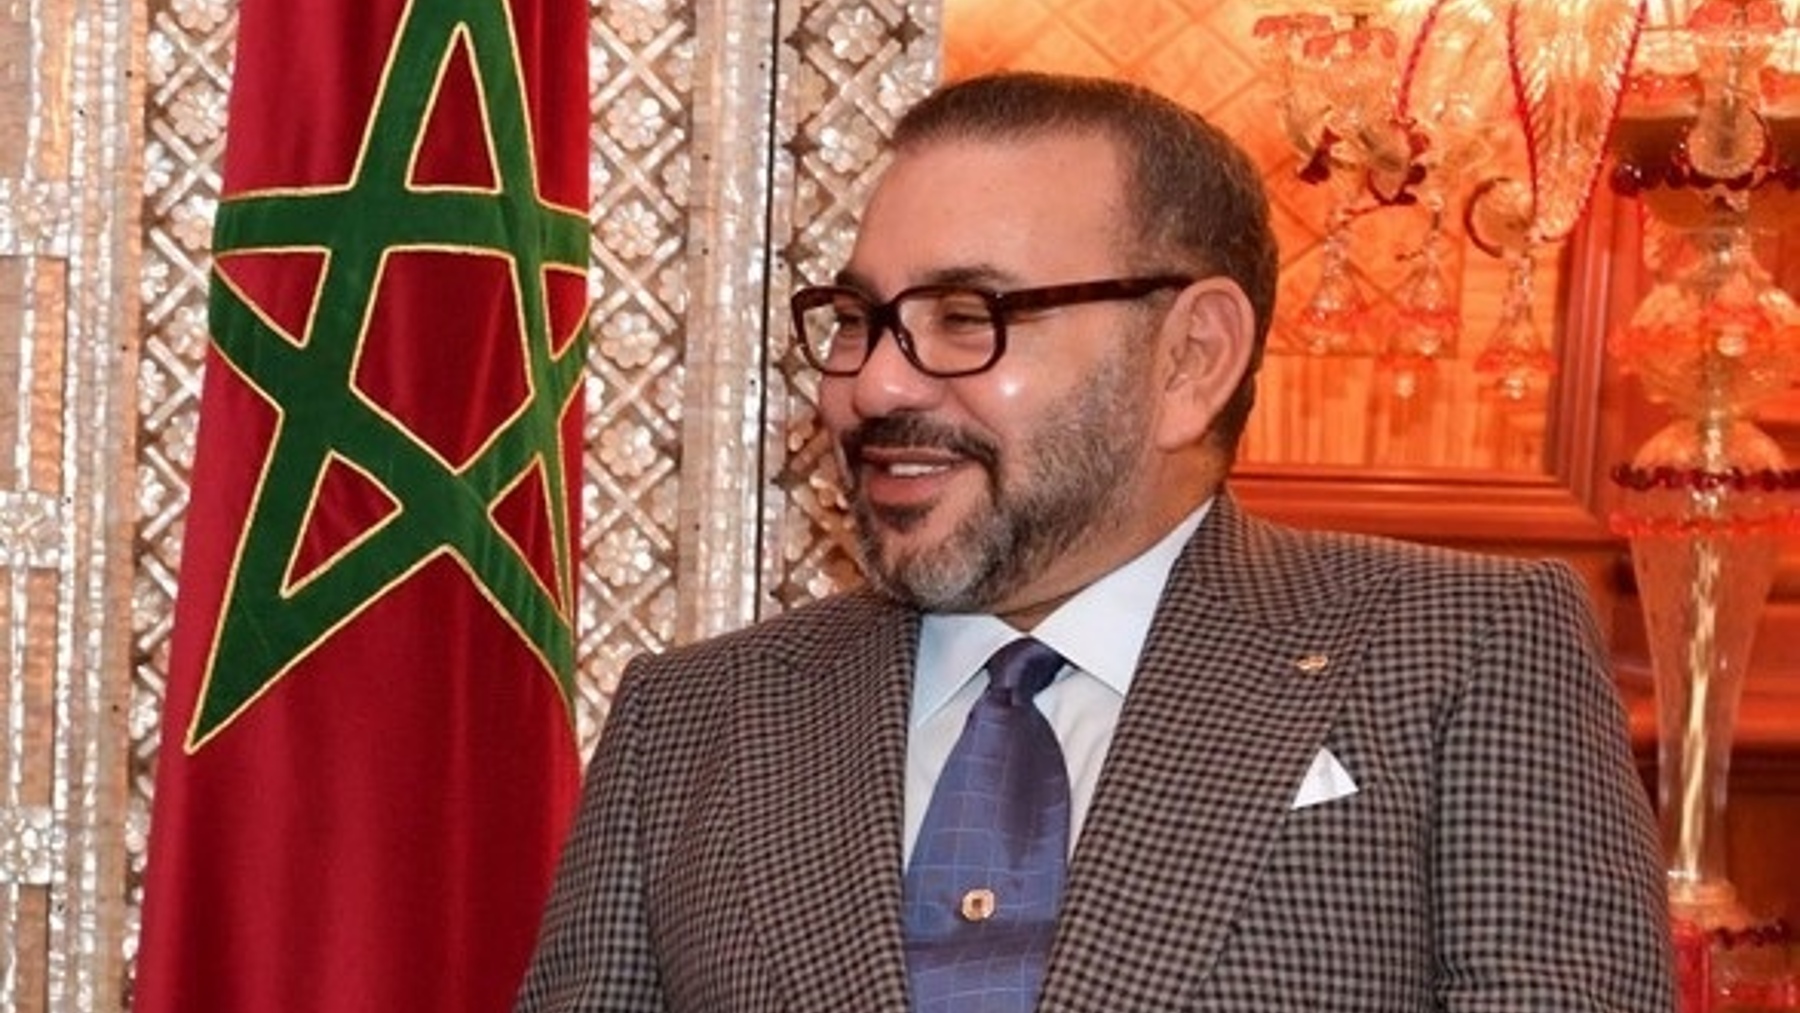 El rey Mohamed VI de Marruecos (PETRA / DPA).